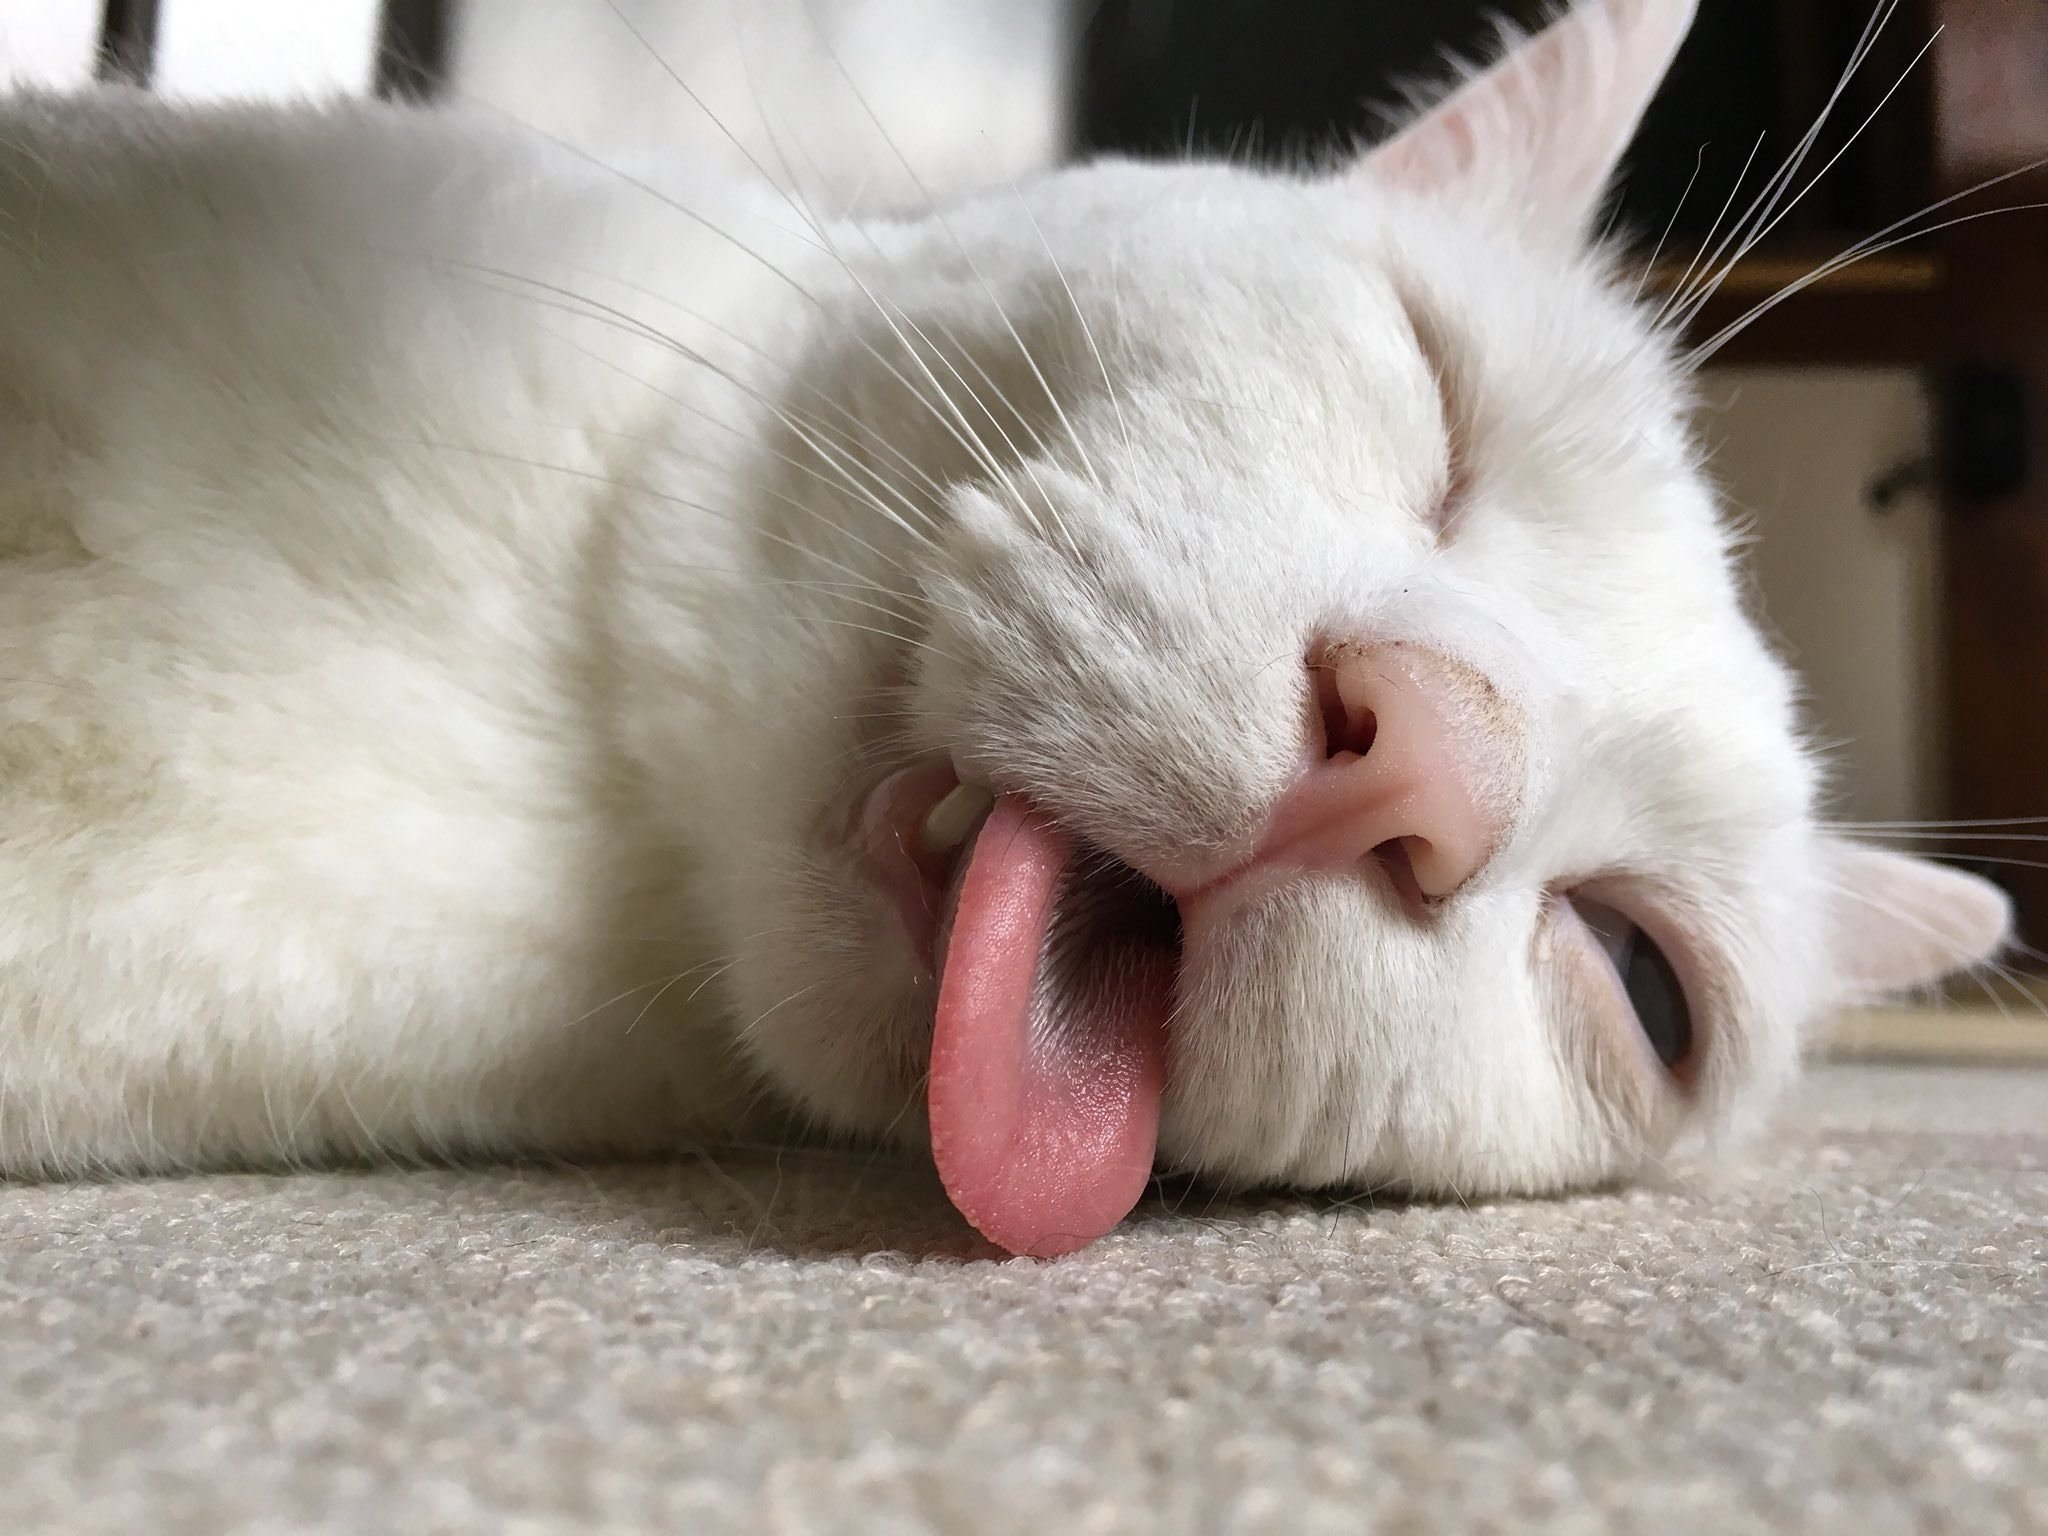 Свесив набок длинный розовый язык. Кошка с высунутым языком. Спящий кот. Белая кошка с высунутым языком. Спящий кот с высунутым языком.